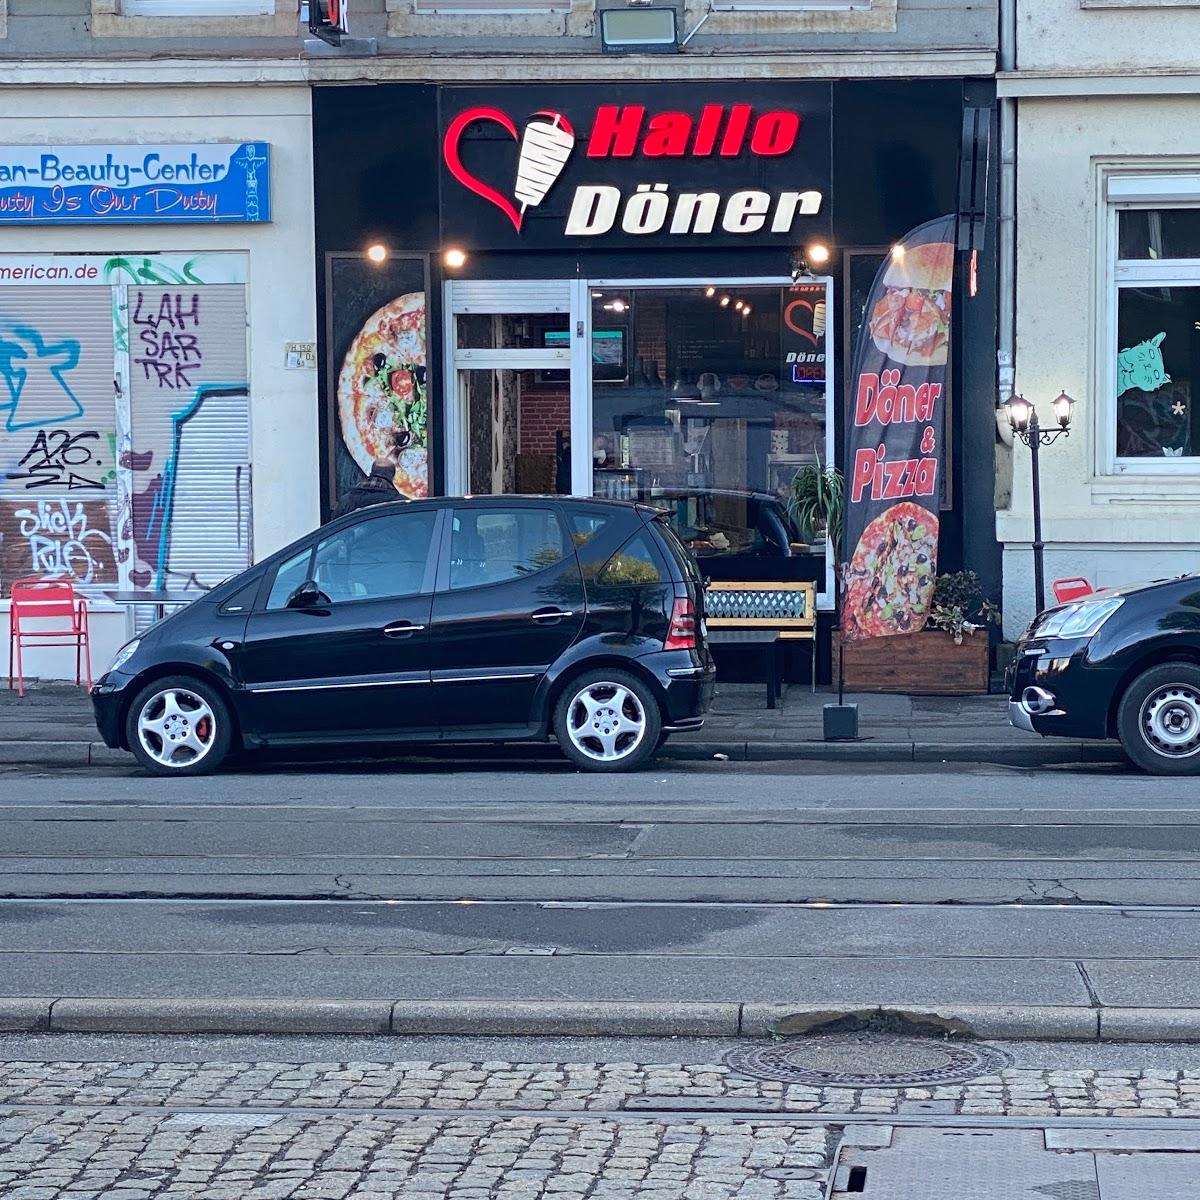 Restaurant "Hallo Döner" in Leipzig